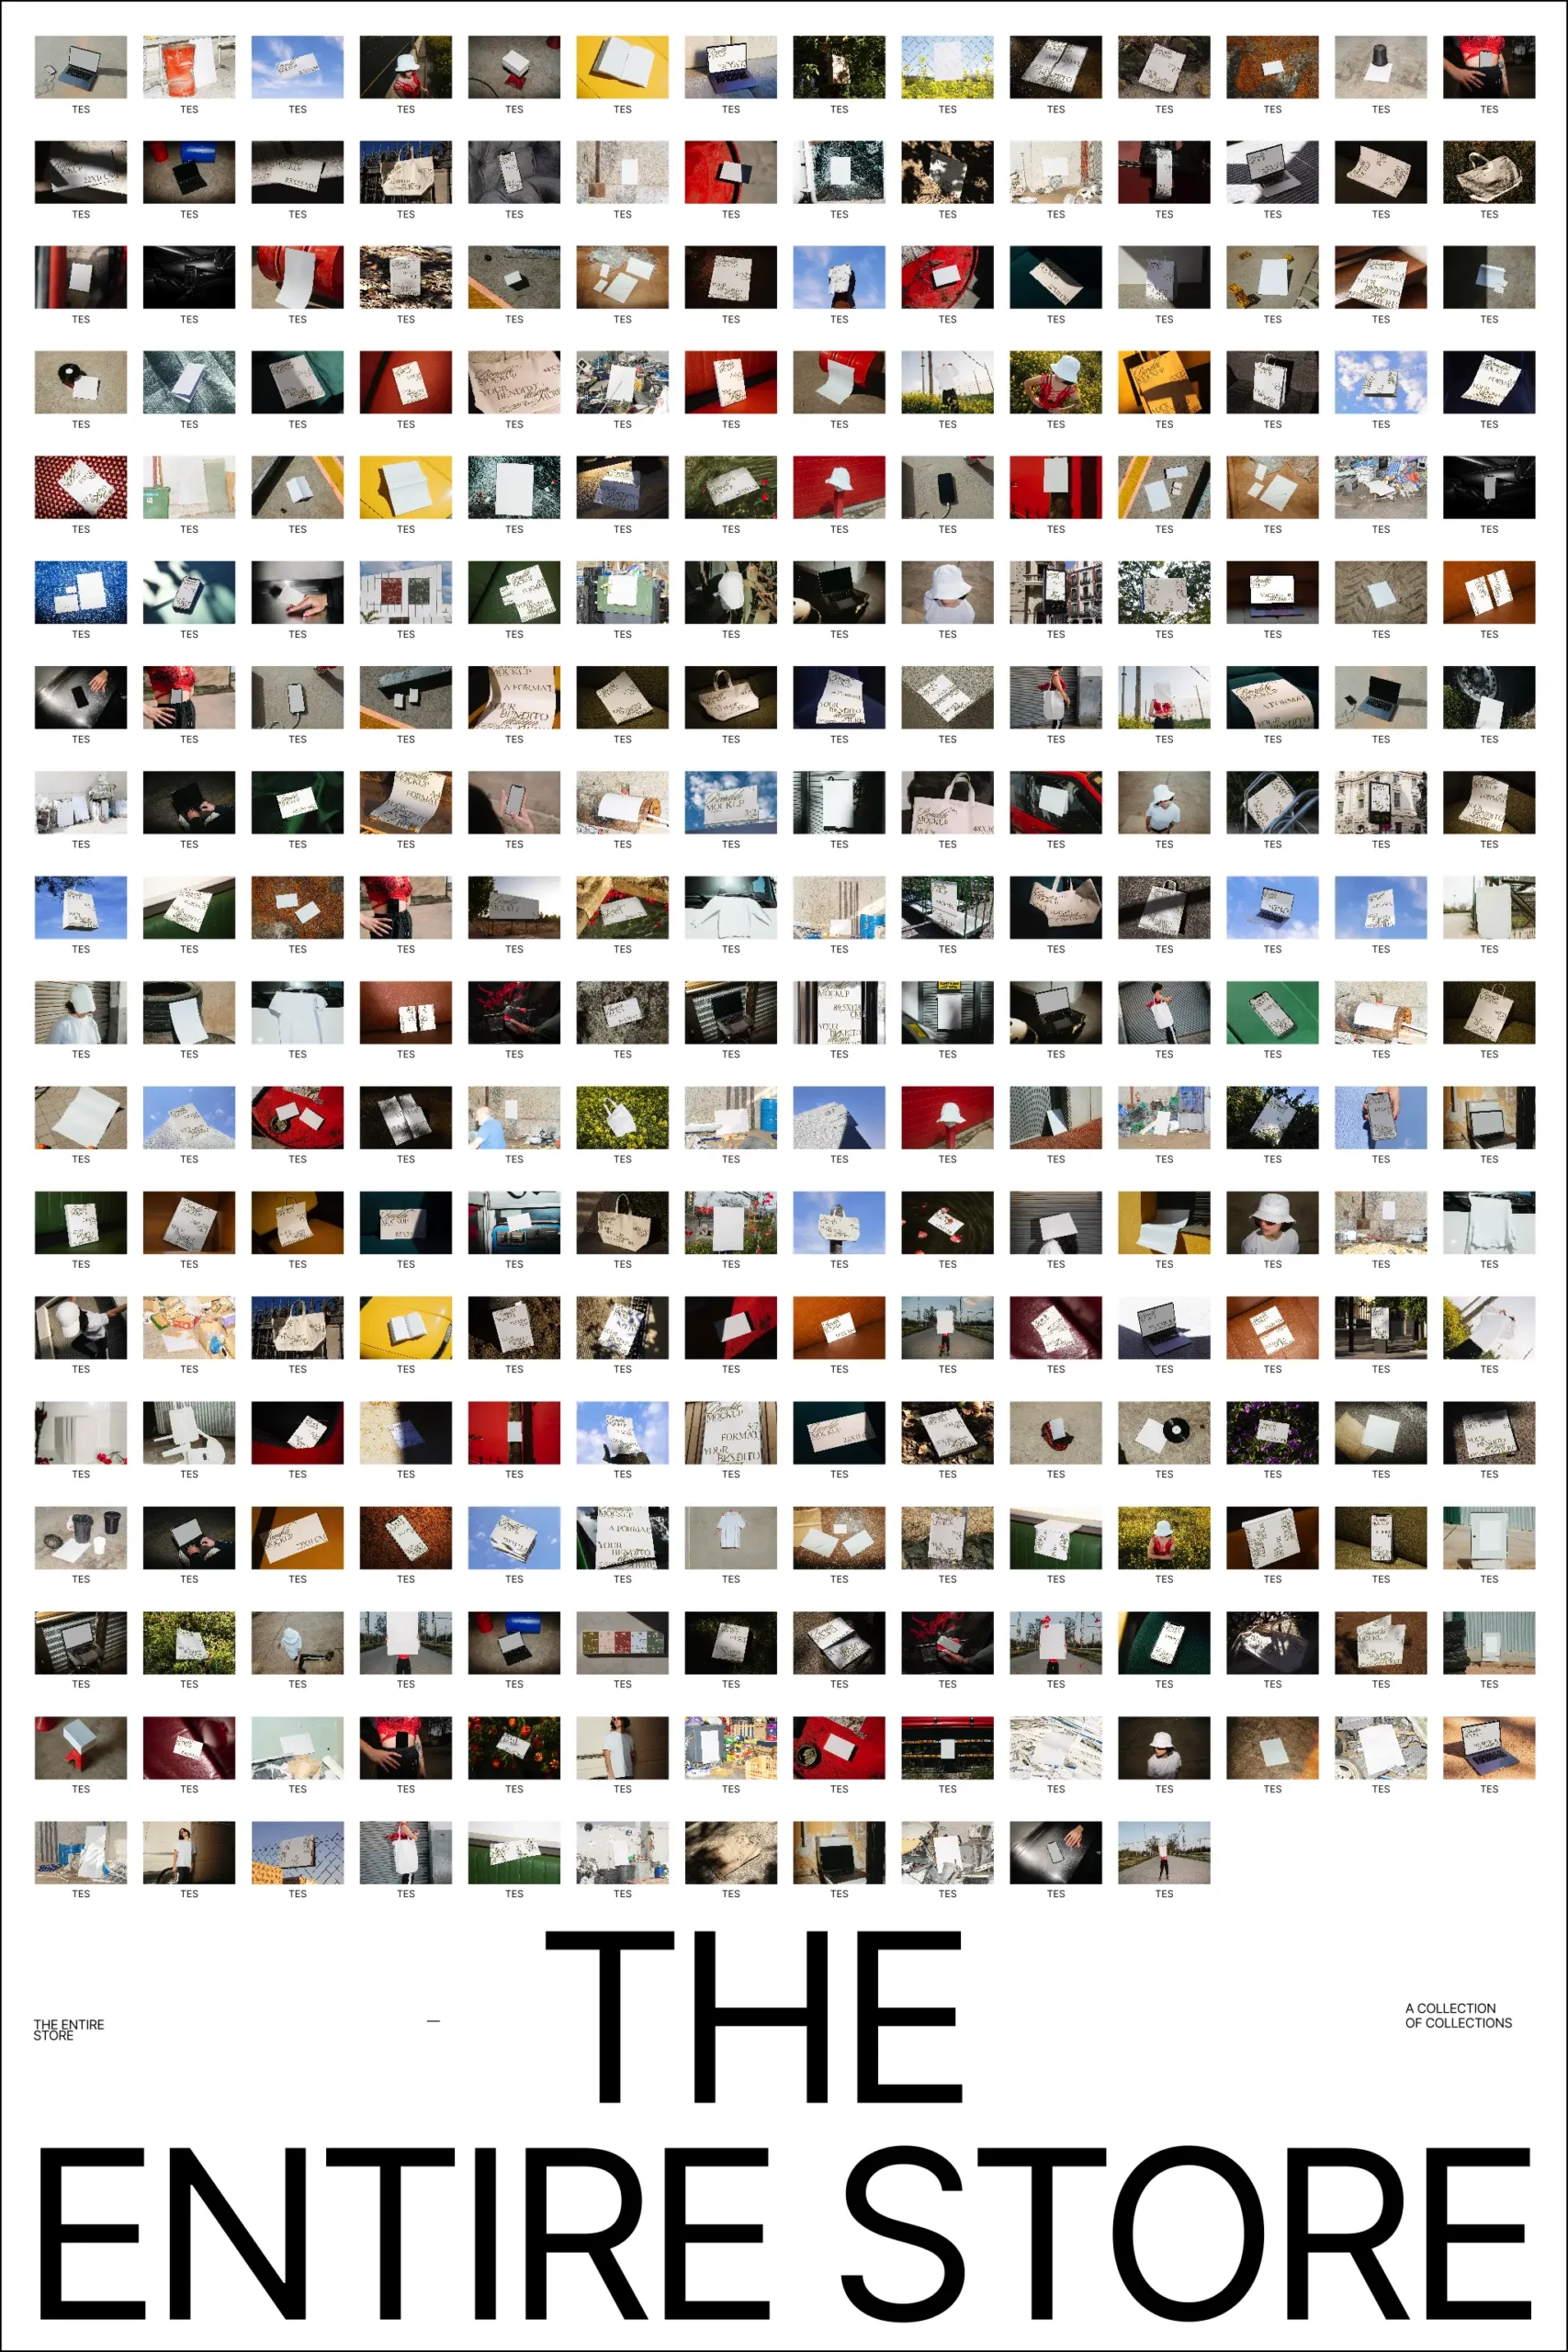 Masonry layout containing the 120 image mockups from The Basics.